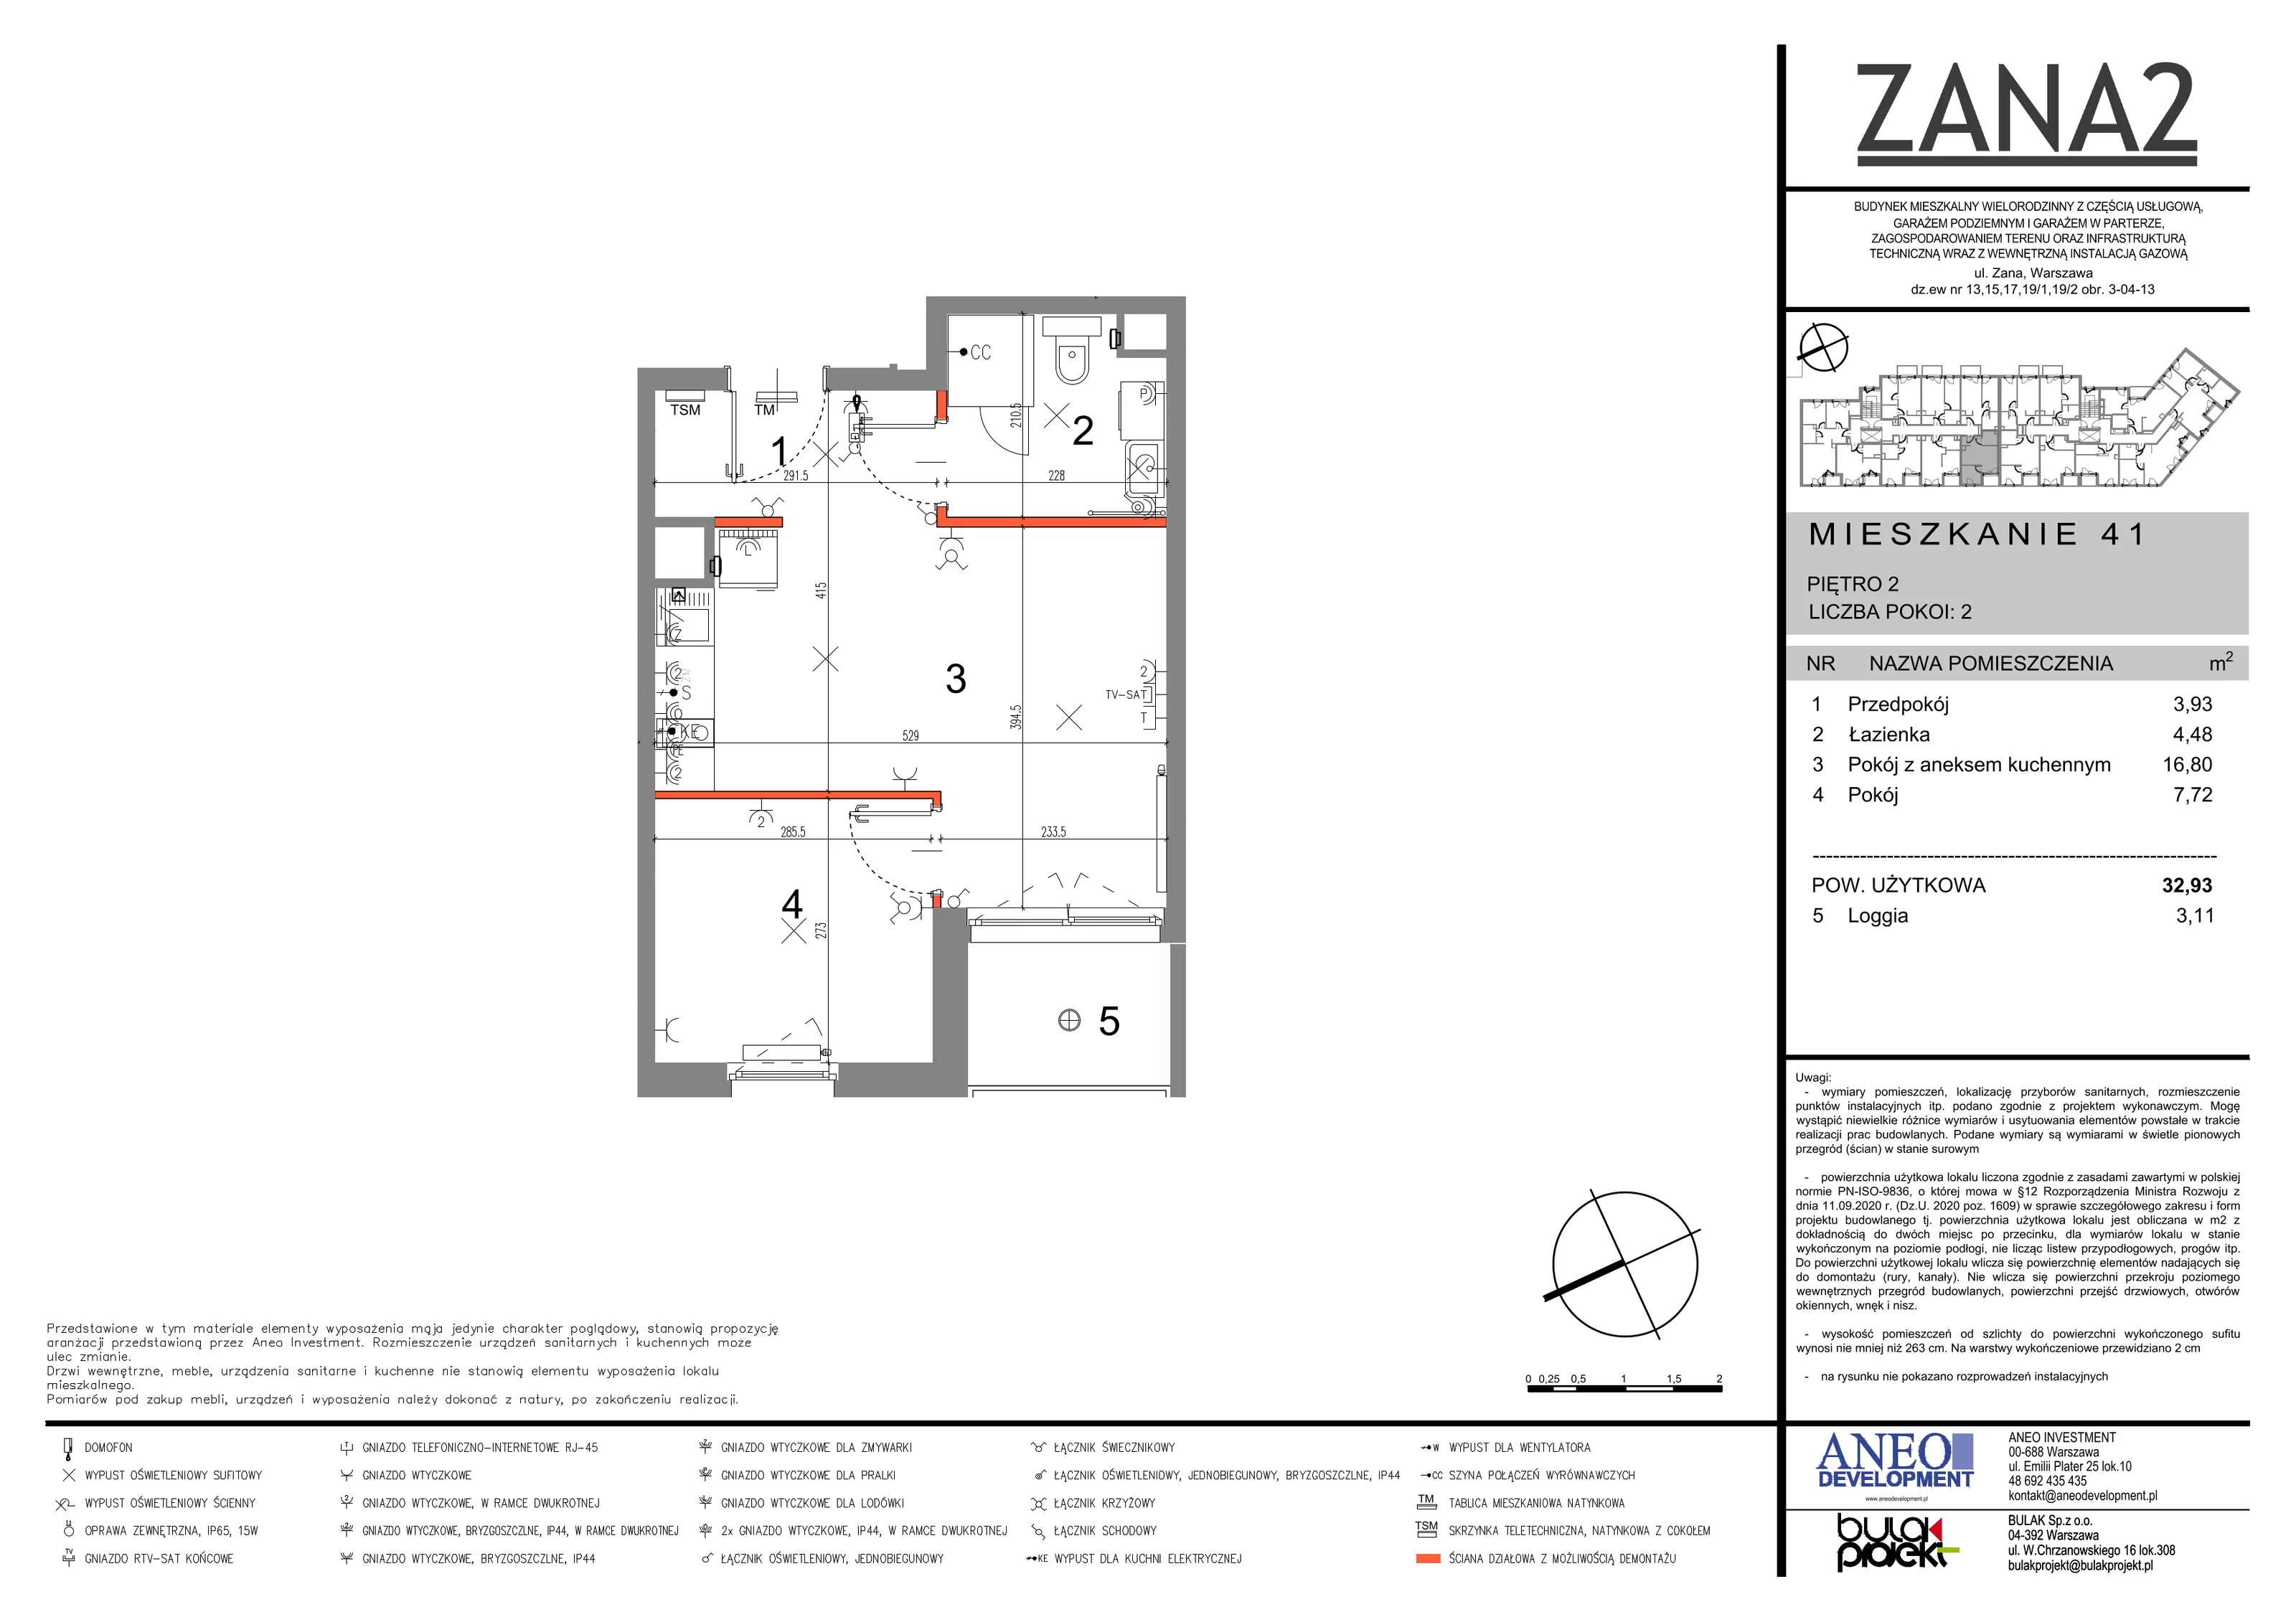 Mieszkanie 32,93 m², piętro 2, oferta nr 41, Zana 2, Warszawa, Praga Południe, Gocławek, ul. Tomasza Zana